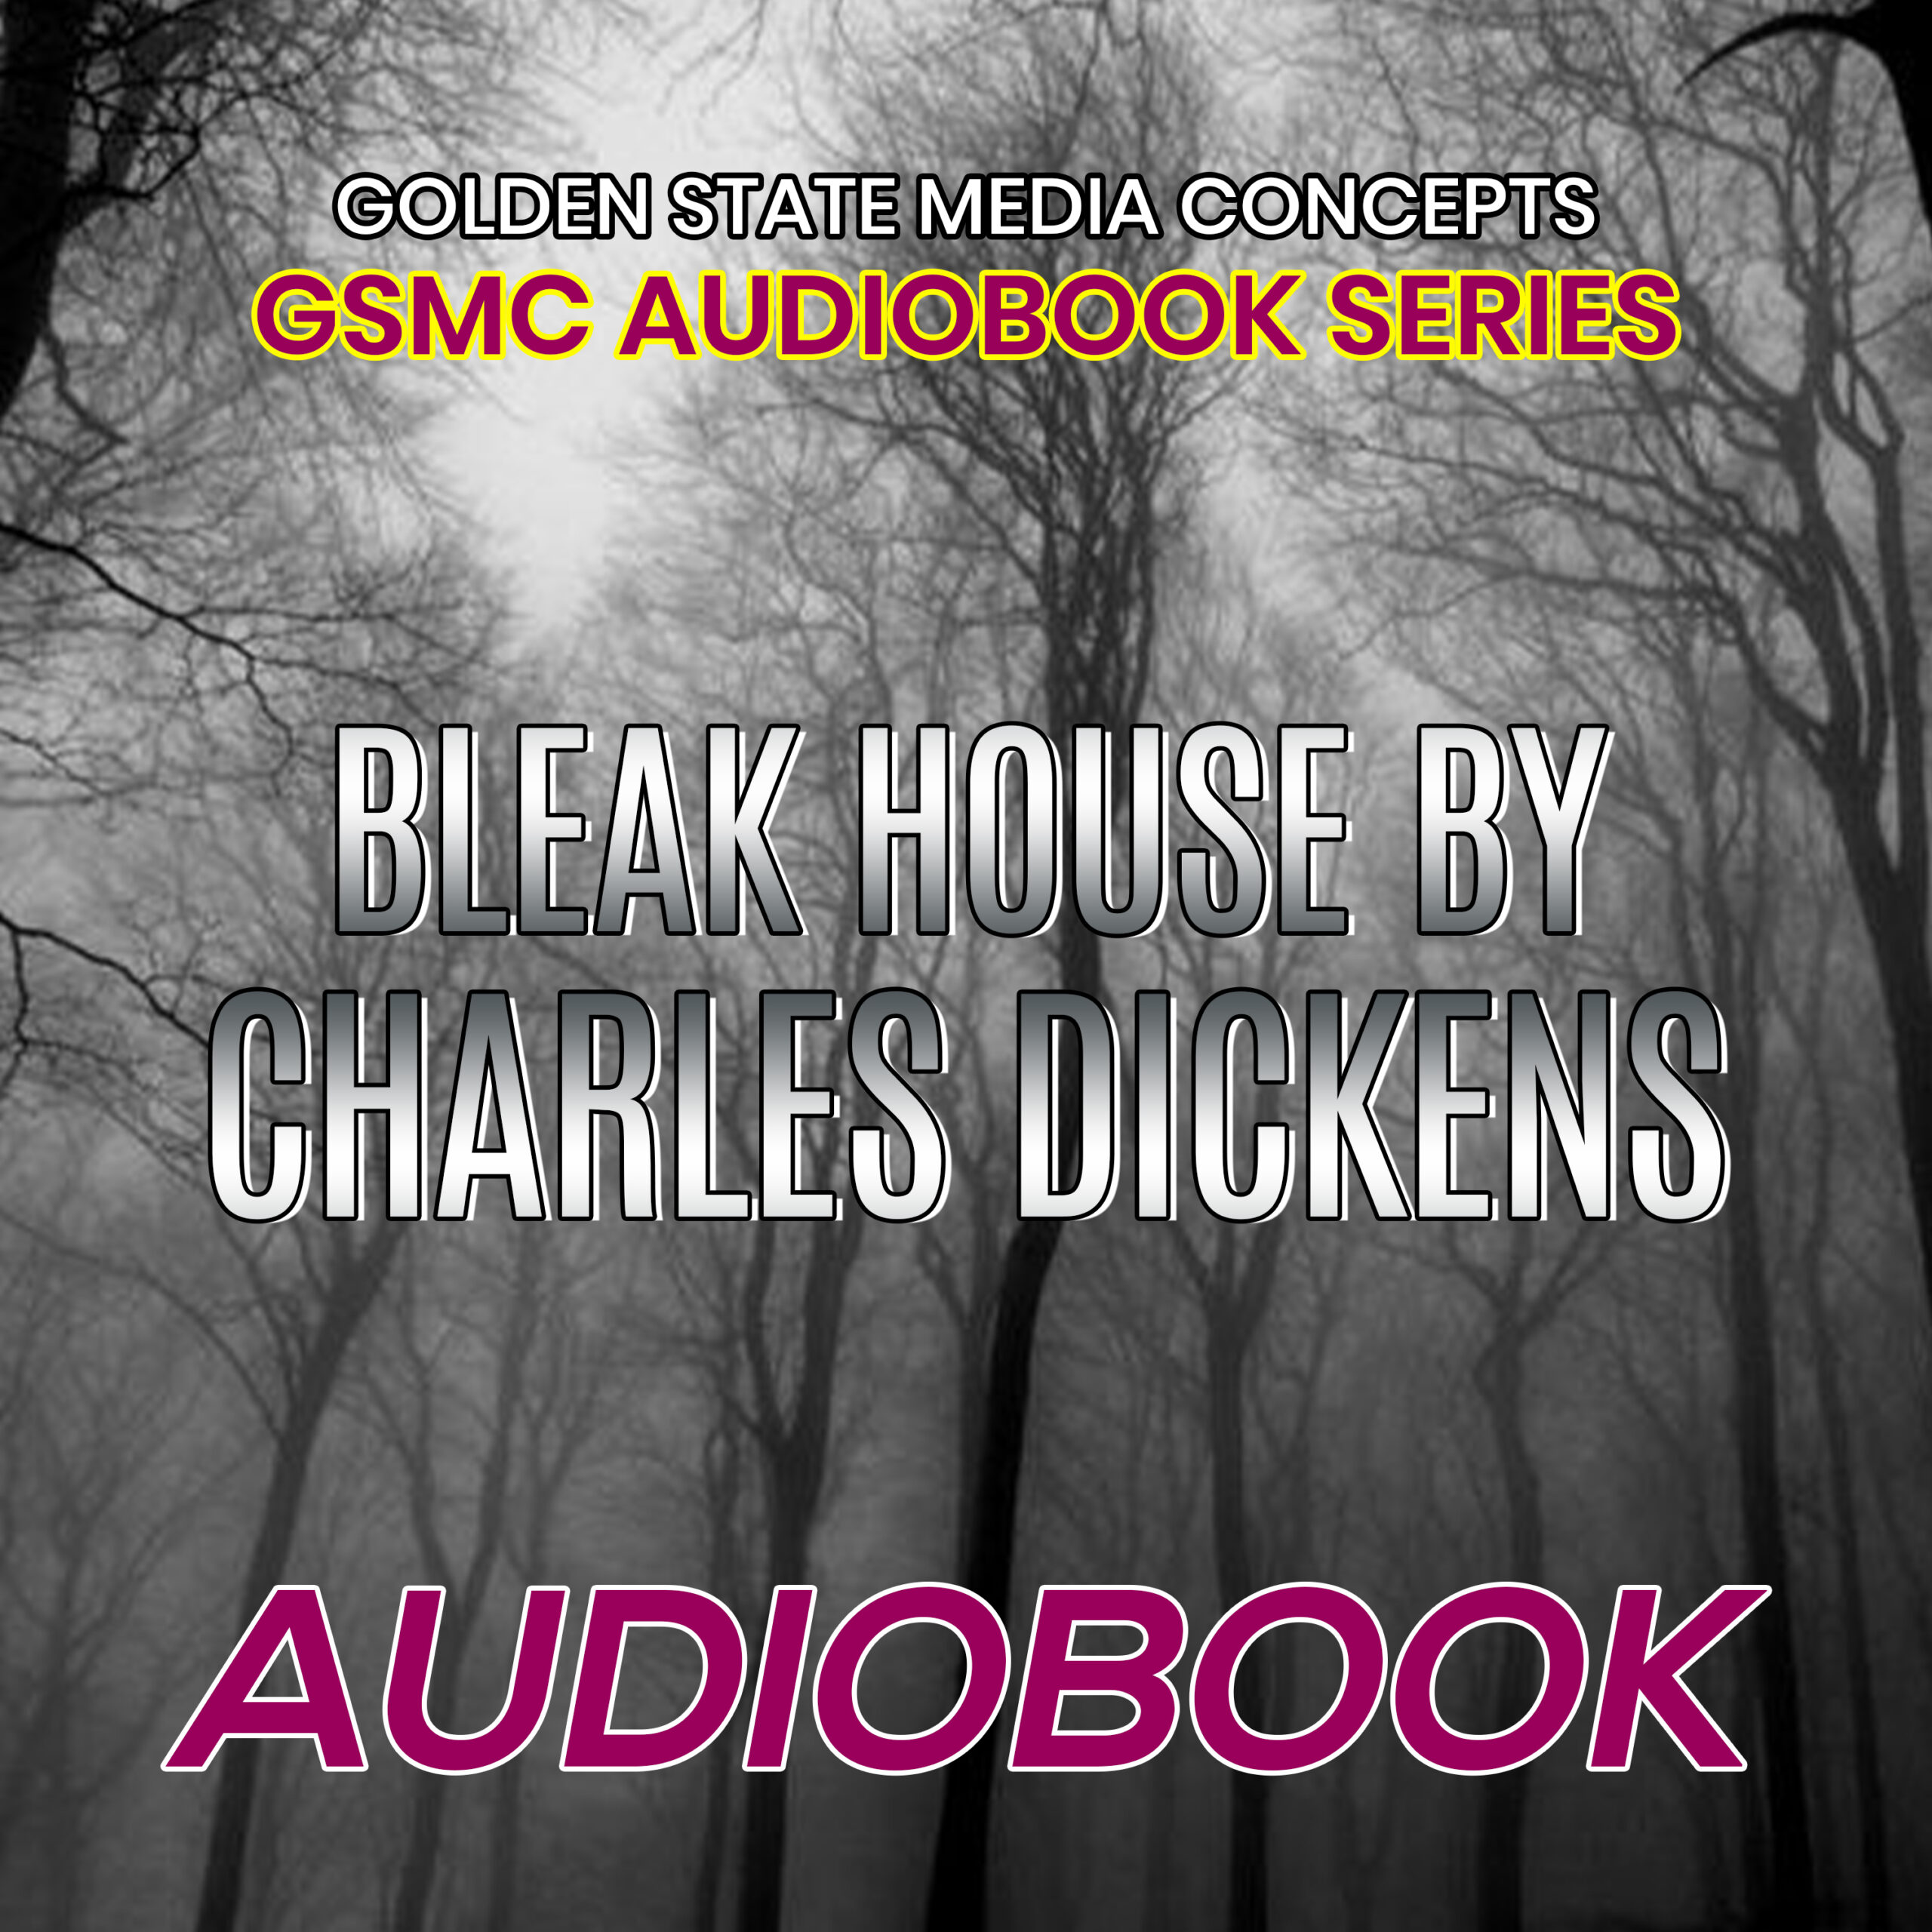 Bleak House by Charles Dickens (1)